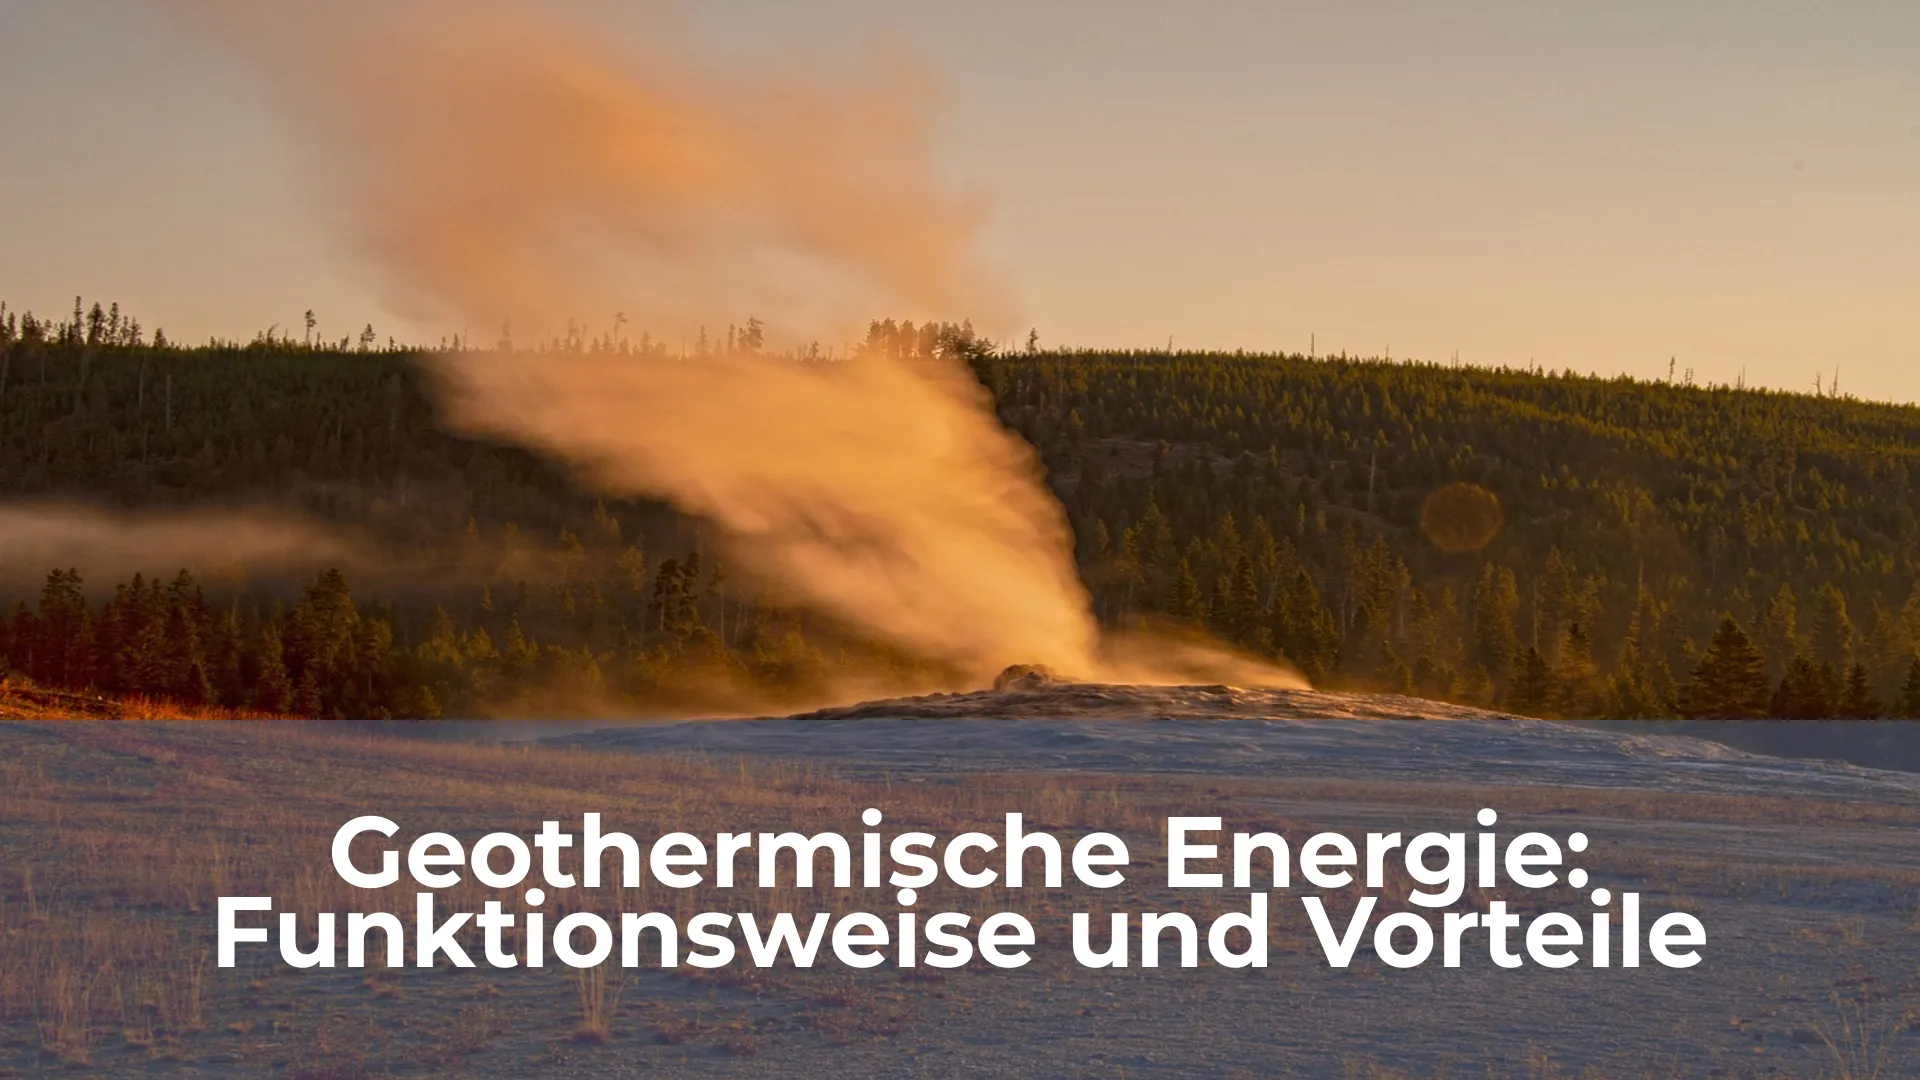 Geothermische energie funktionsweise und vorteile